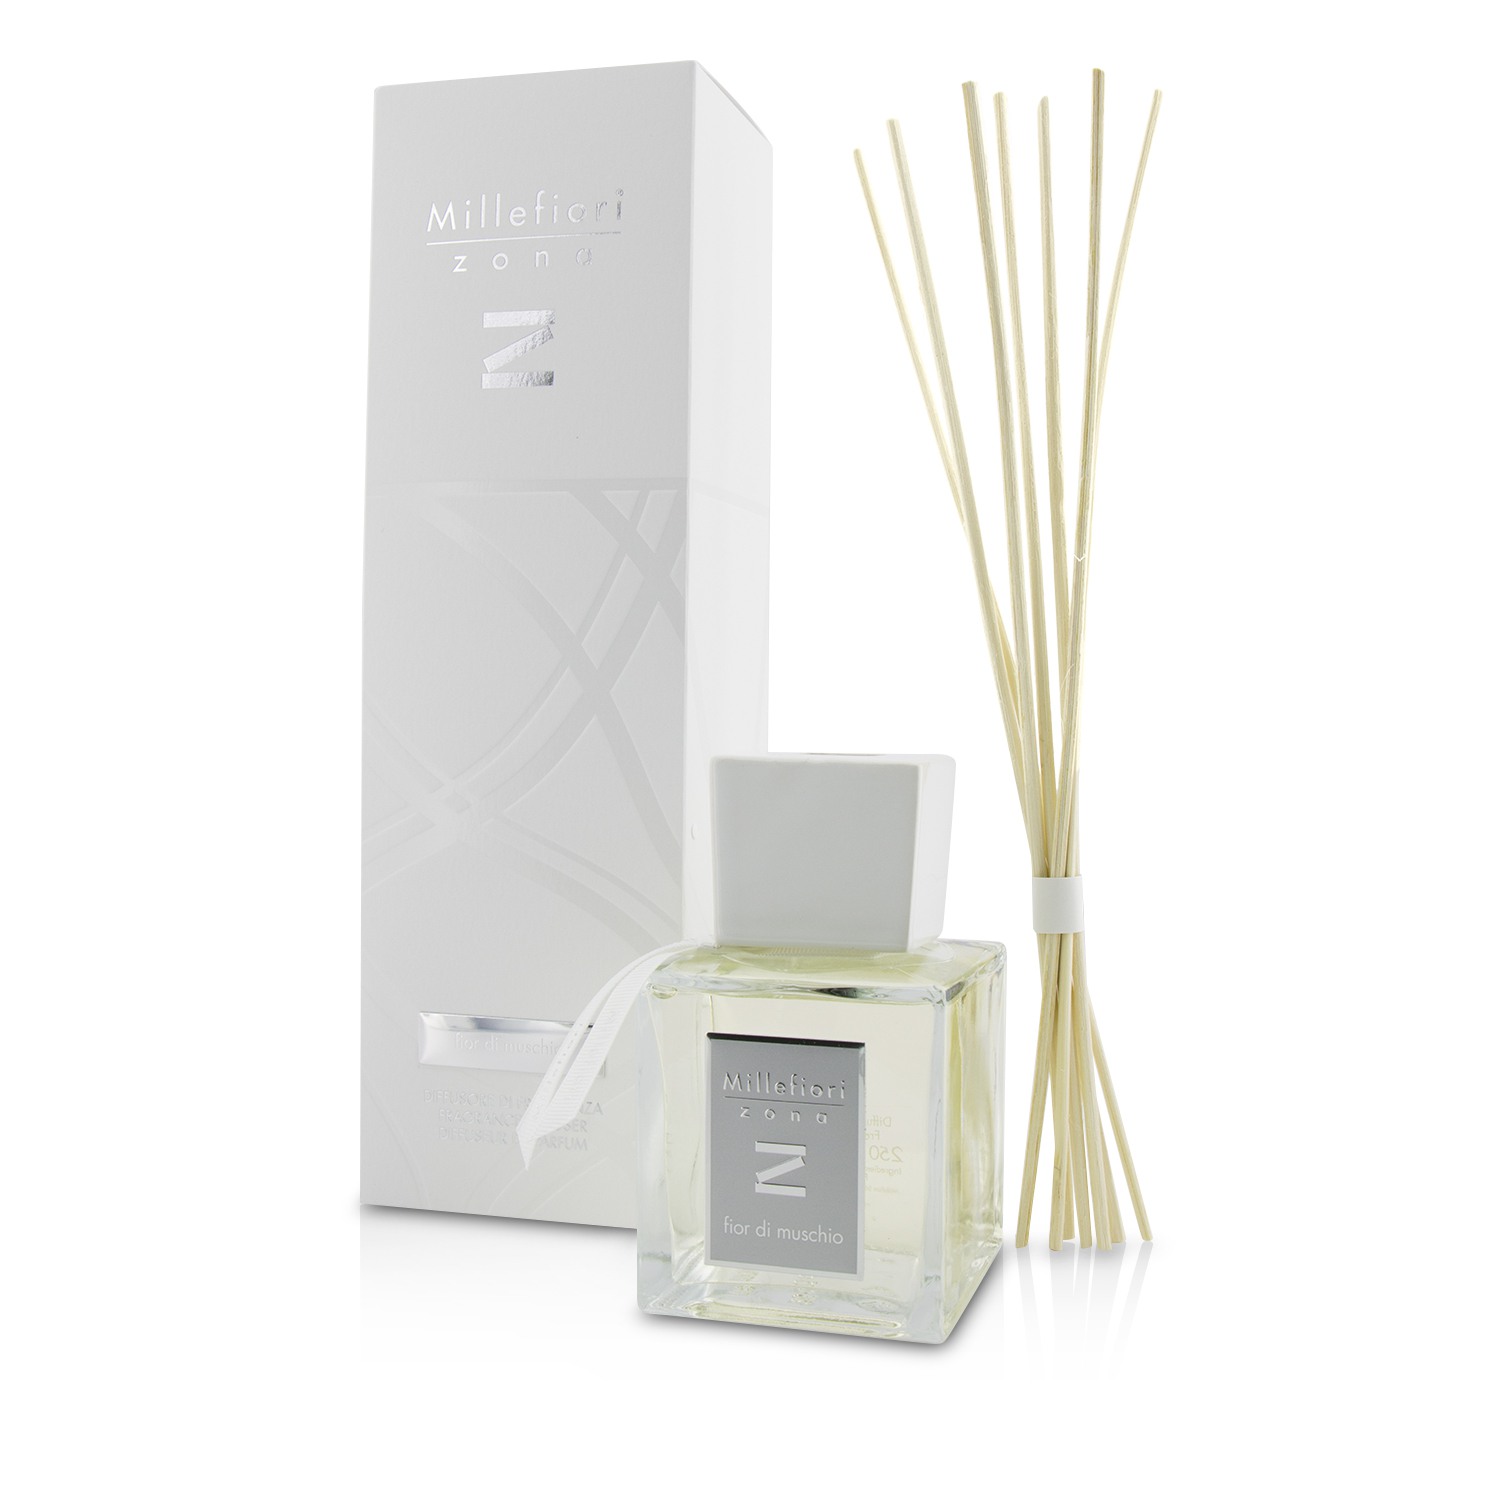 Zona Fragrance Diffuser - Fior Di Muschio (New Packaging) Millefiori Image